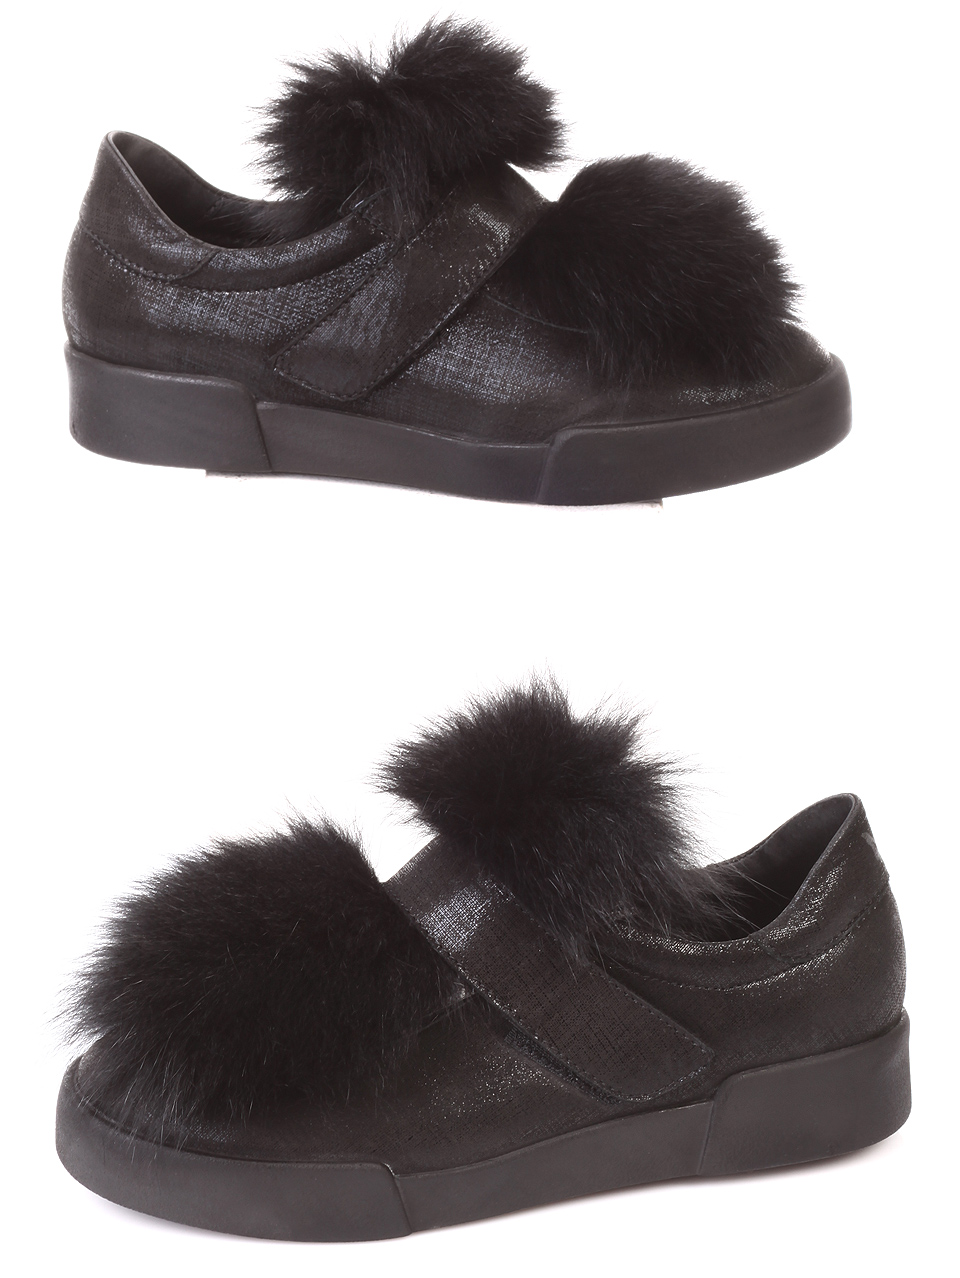 Дамски обувки от естествена кожа, с естествен косъм 3AB-181030 black